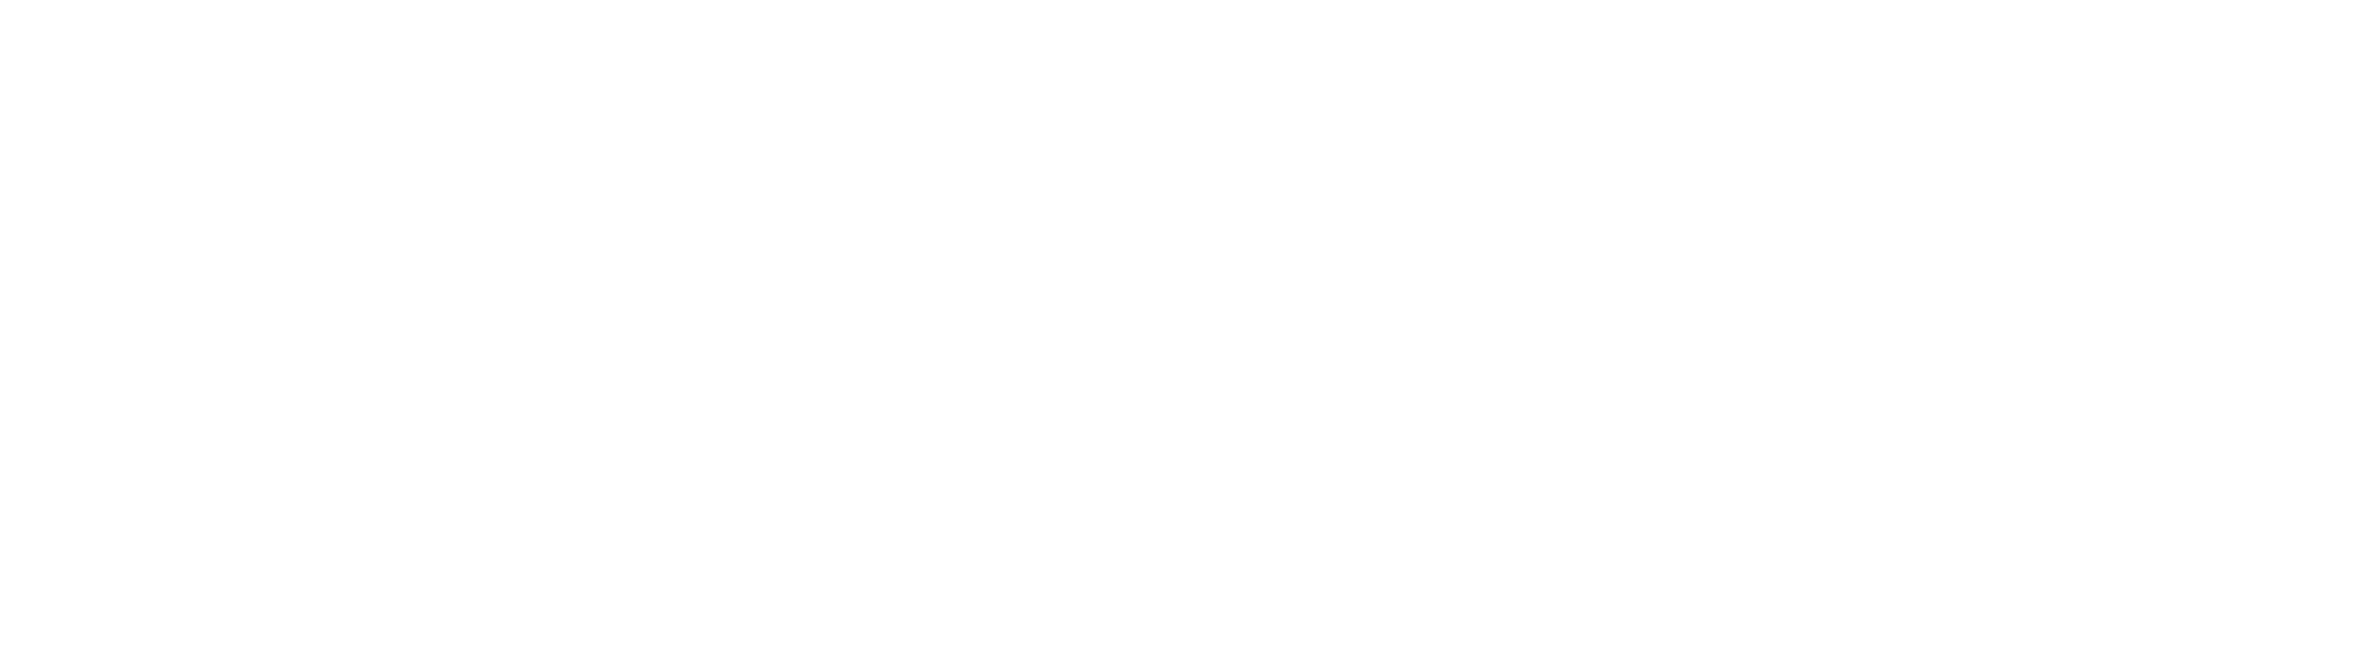 howtotreatcancer.com